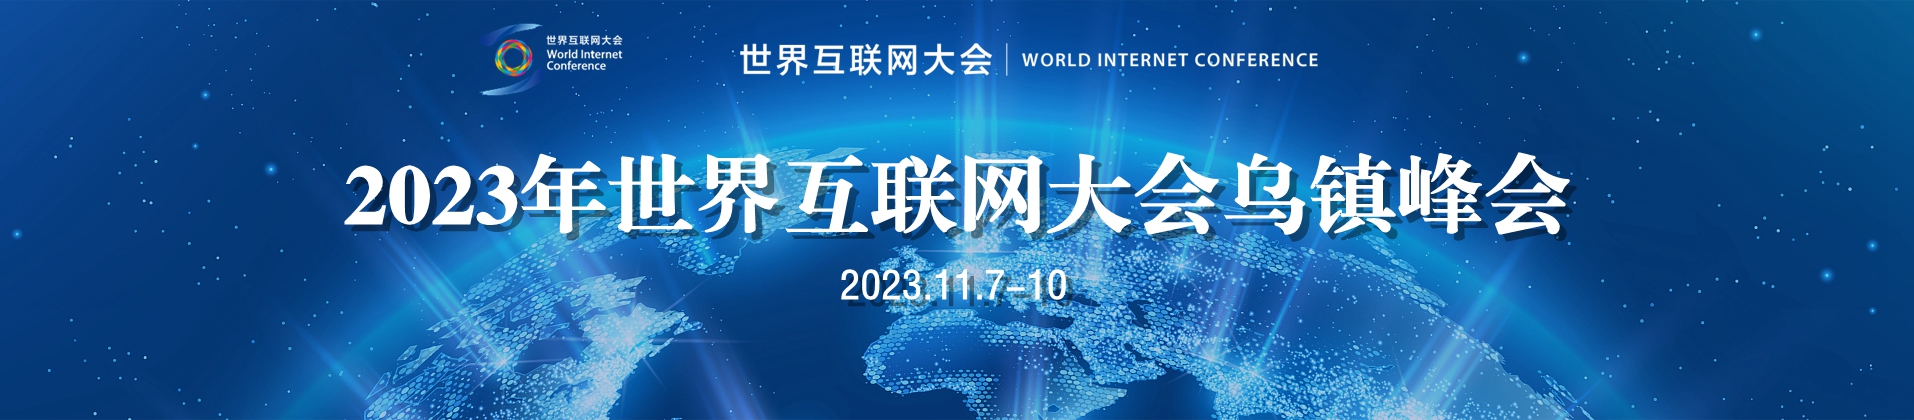 2023世界網際網路大會烏鎮峰會